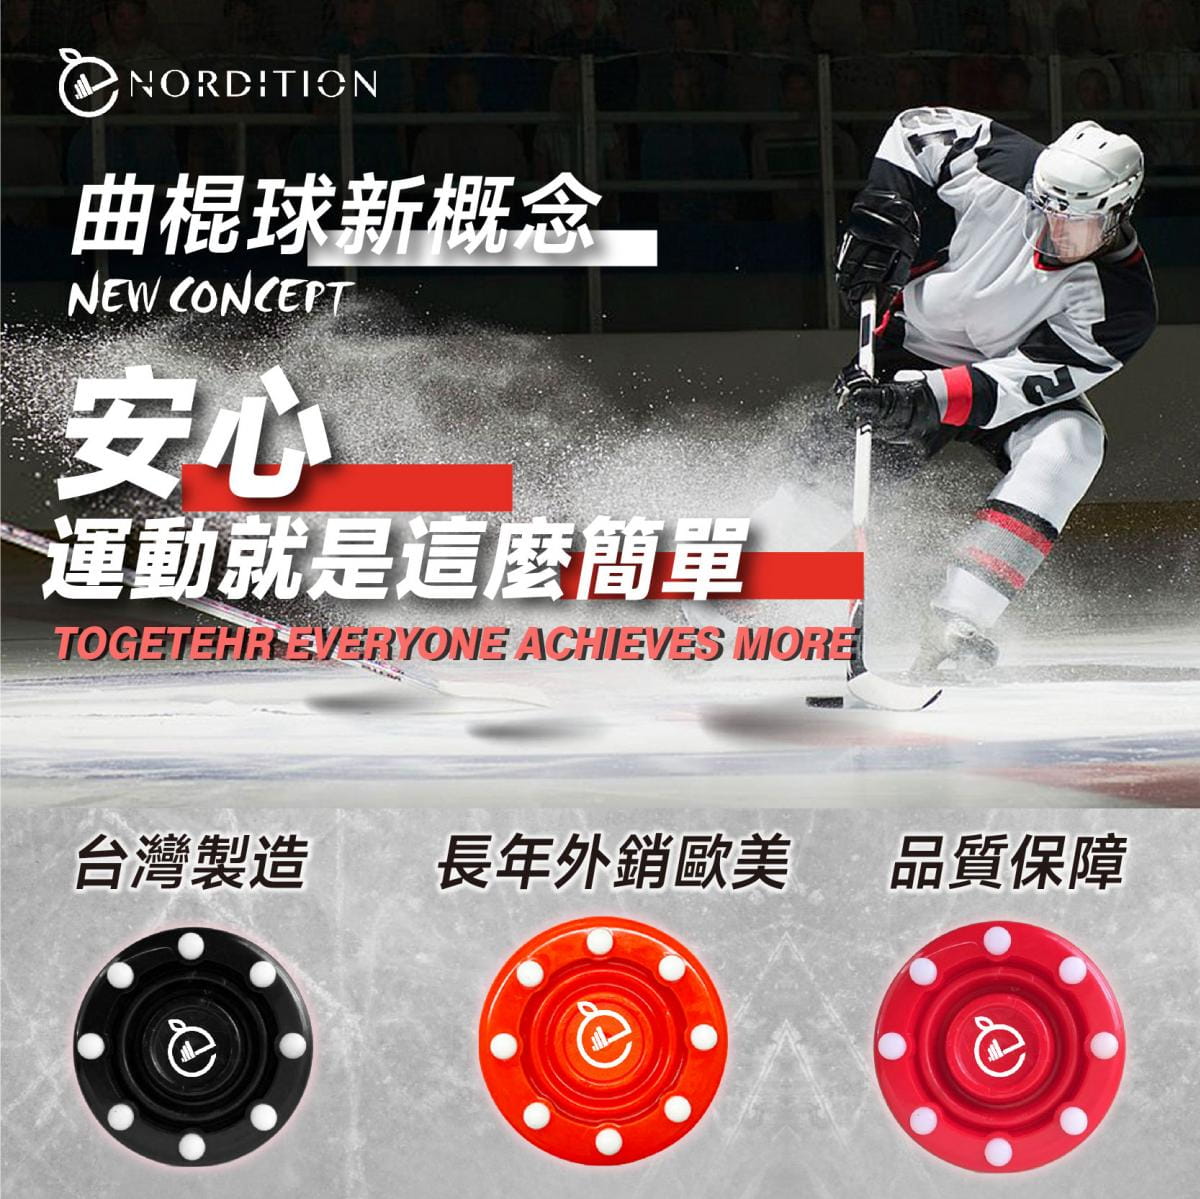 【NORDITION】陸上曲棍球- 八點 ◆ 台灣製 滑輪 滑冰 冰球 inline 球餅 NHL直排輪 曲棍球餅 體育 2